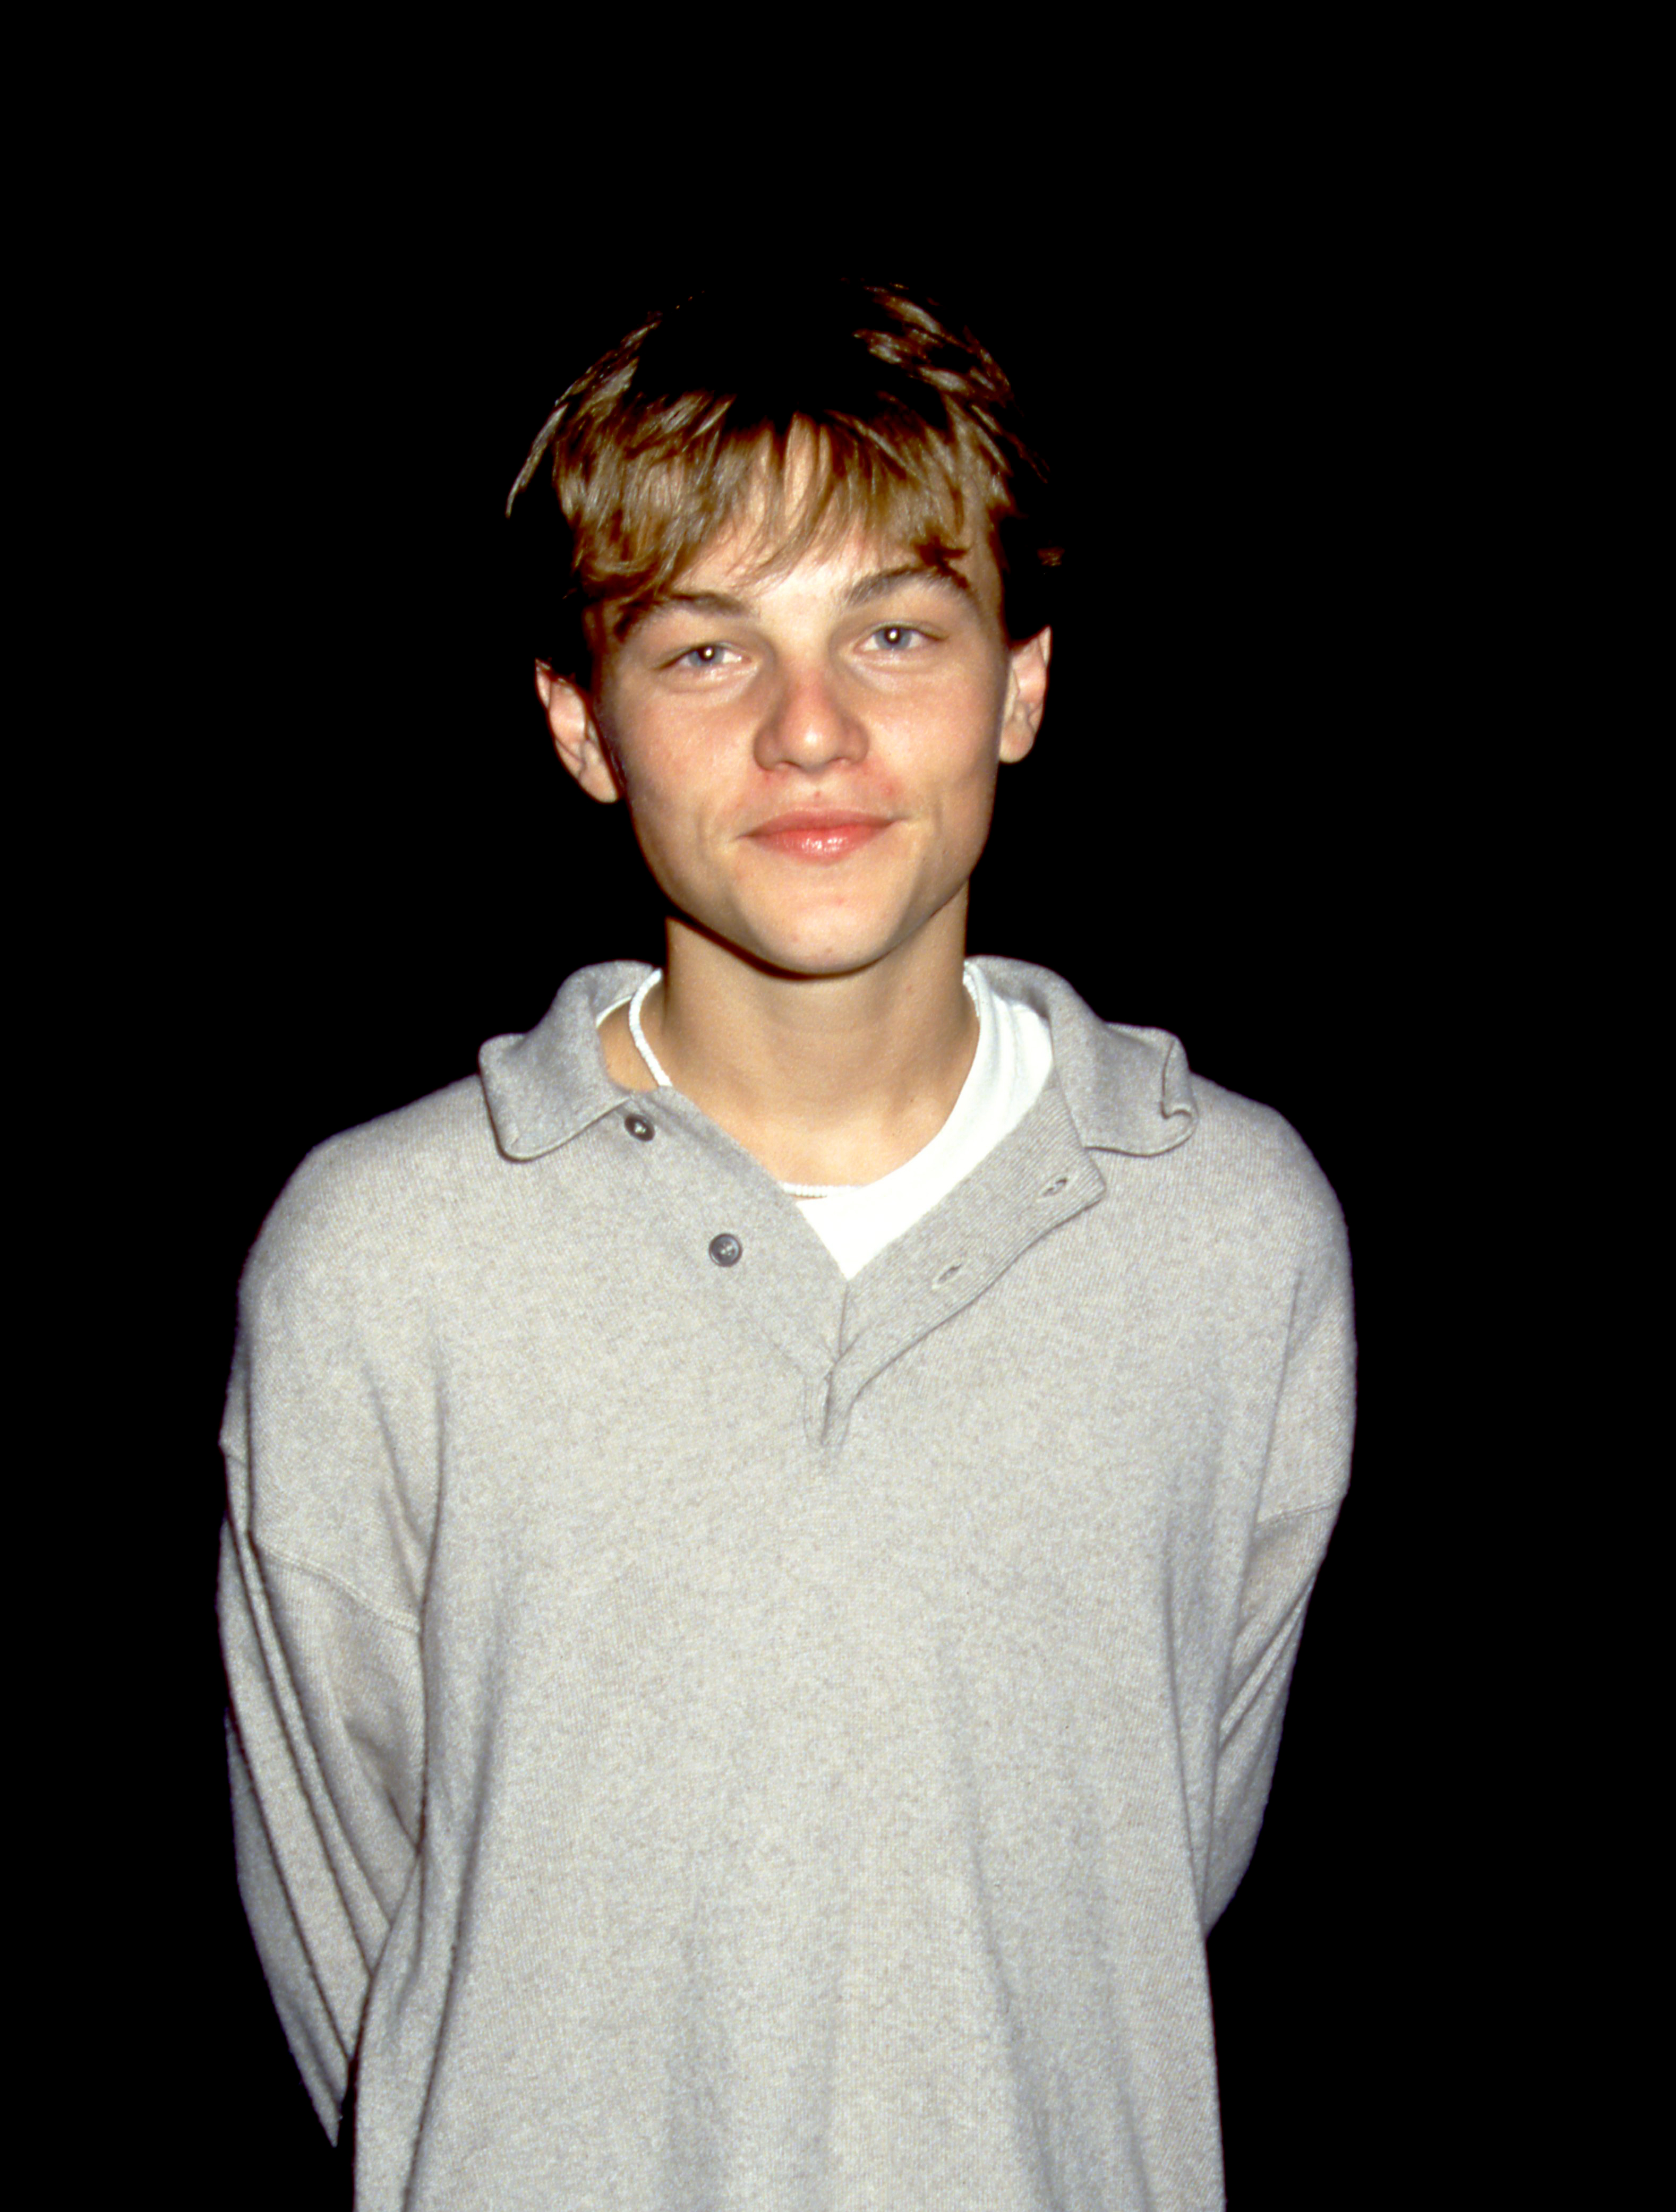 Le jeune garçon pose pour un portrait le 8 septembre 1993 | Source : Getty Images